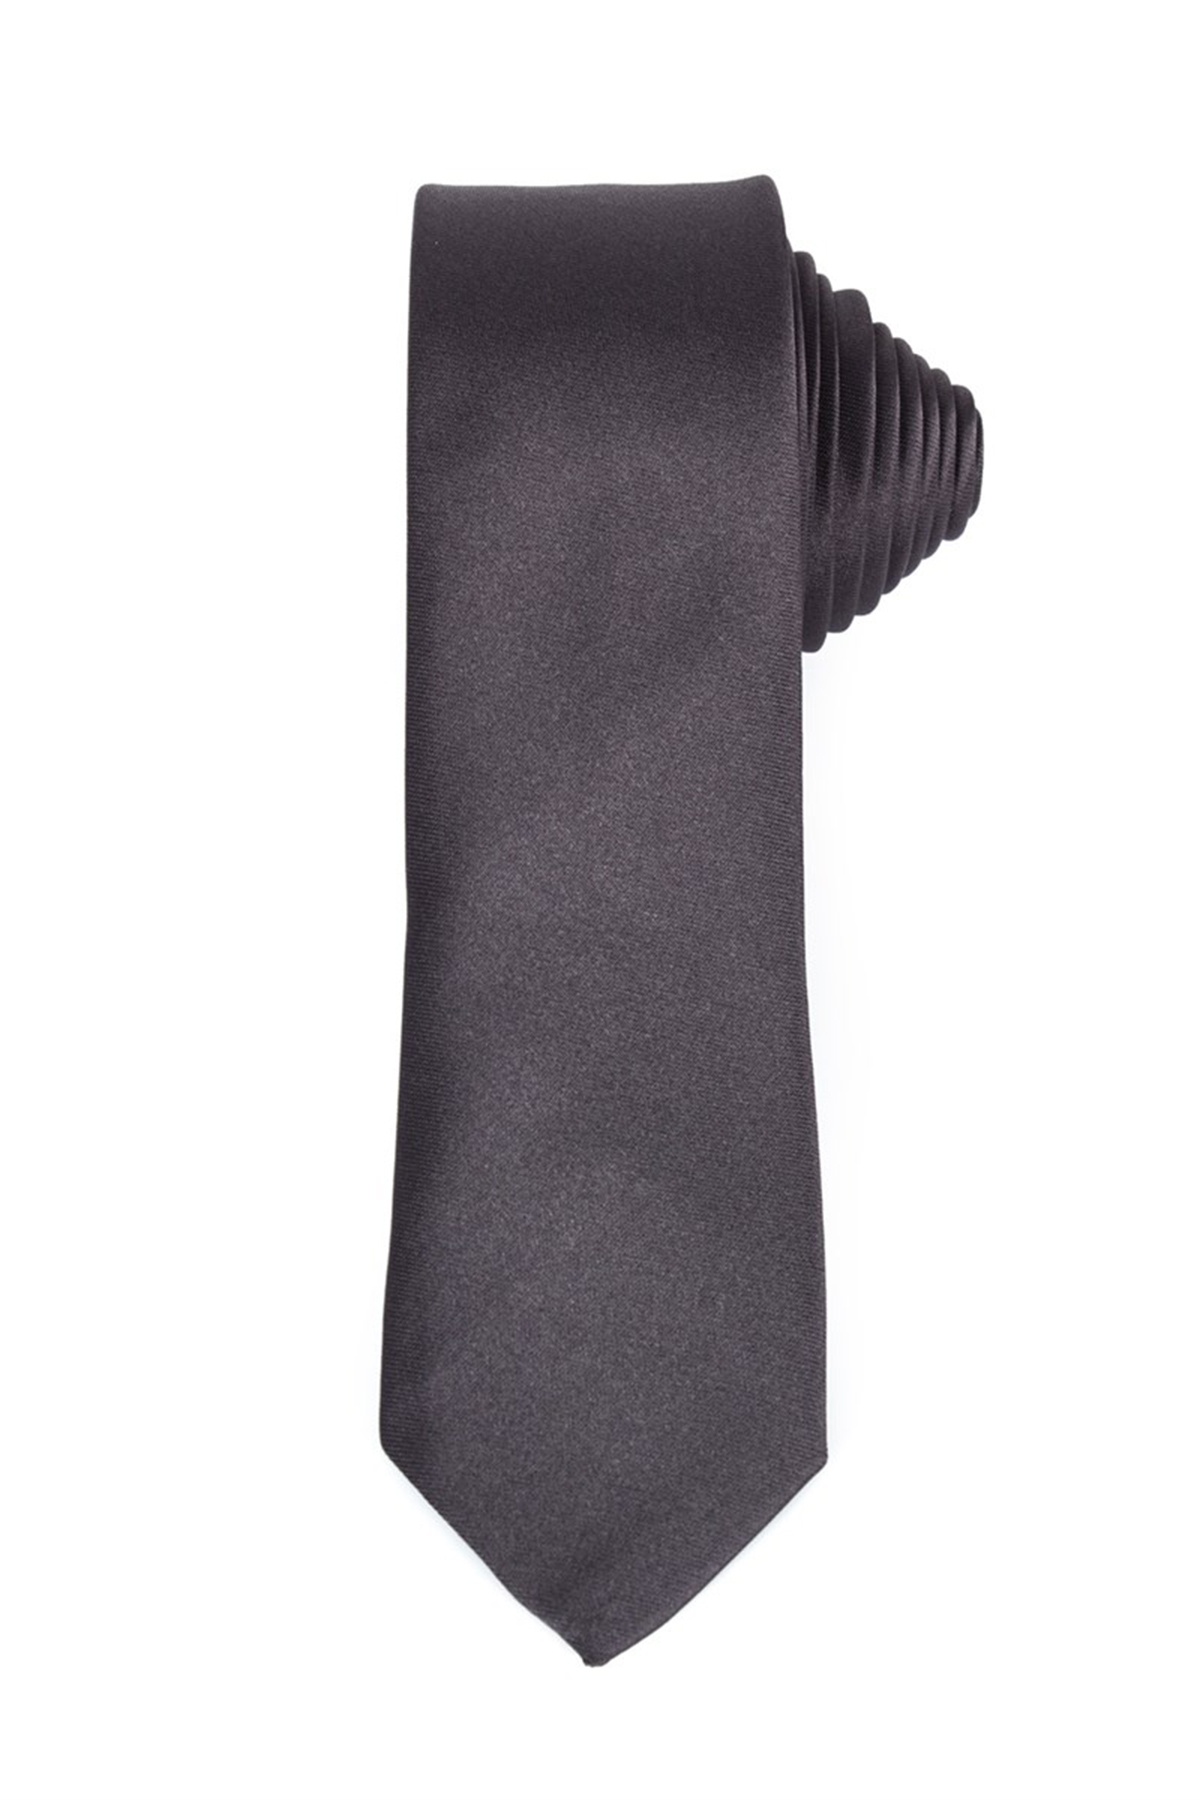 Sötétszürke színű vékony nyakkendő